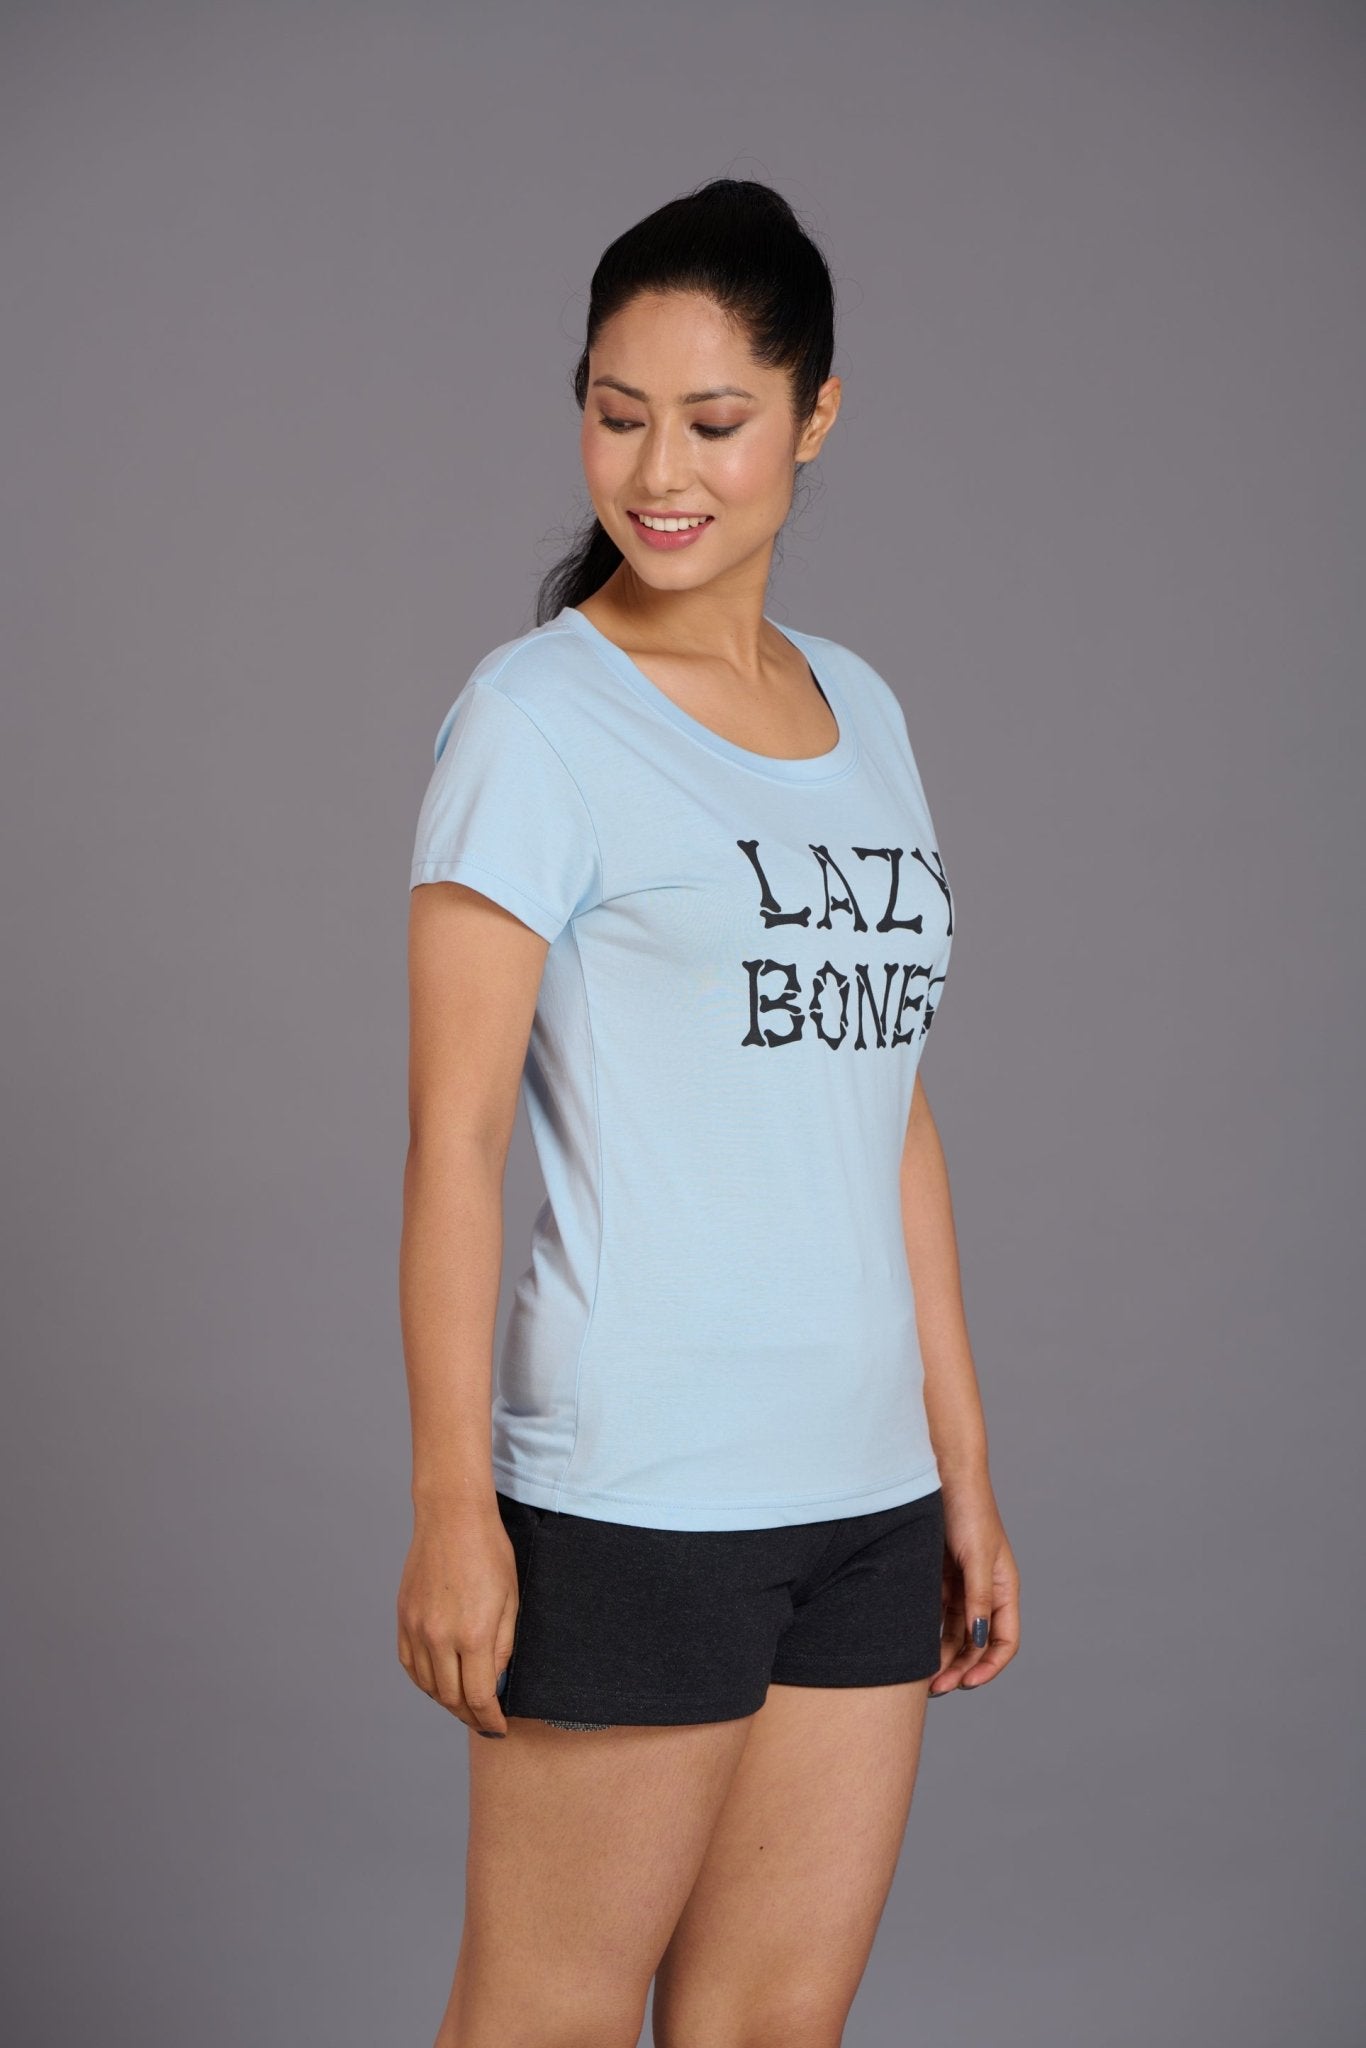 Lazy Bones Sky Blue T-Shirt for Women - Go Devil